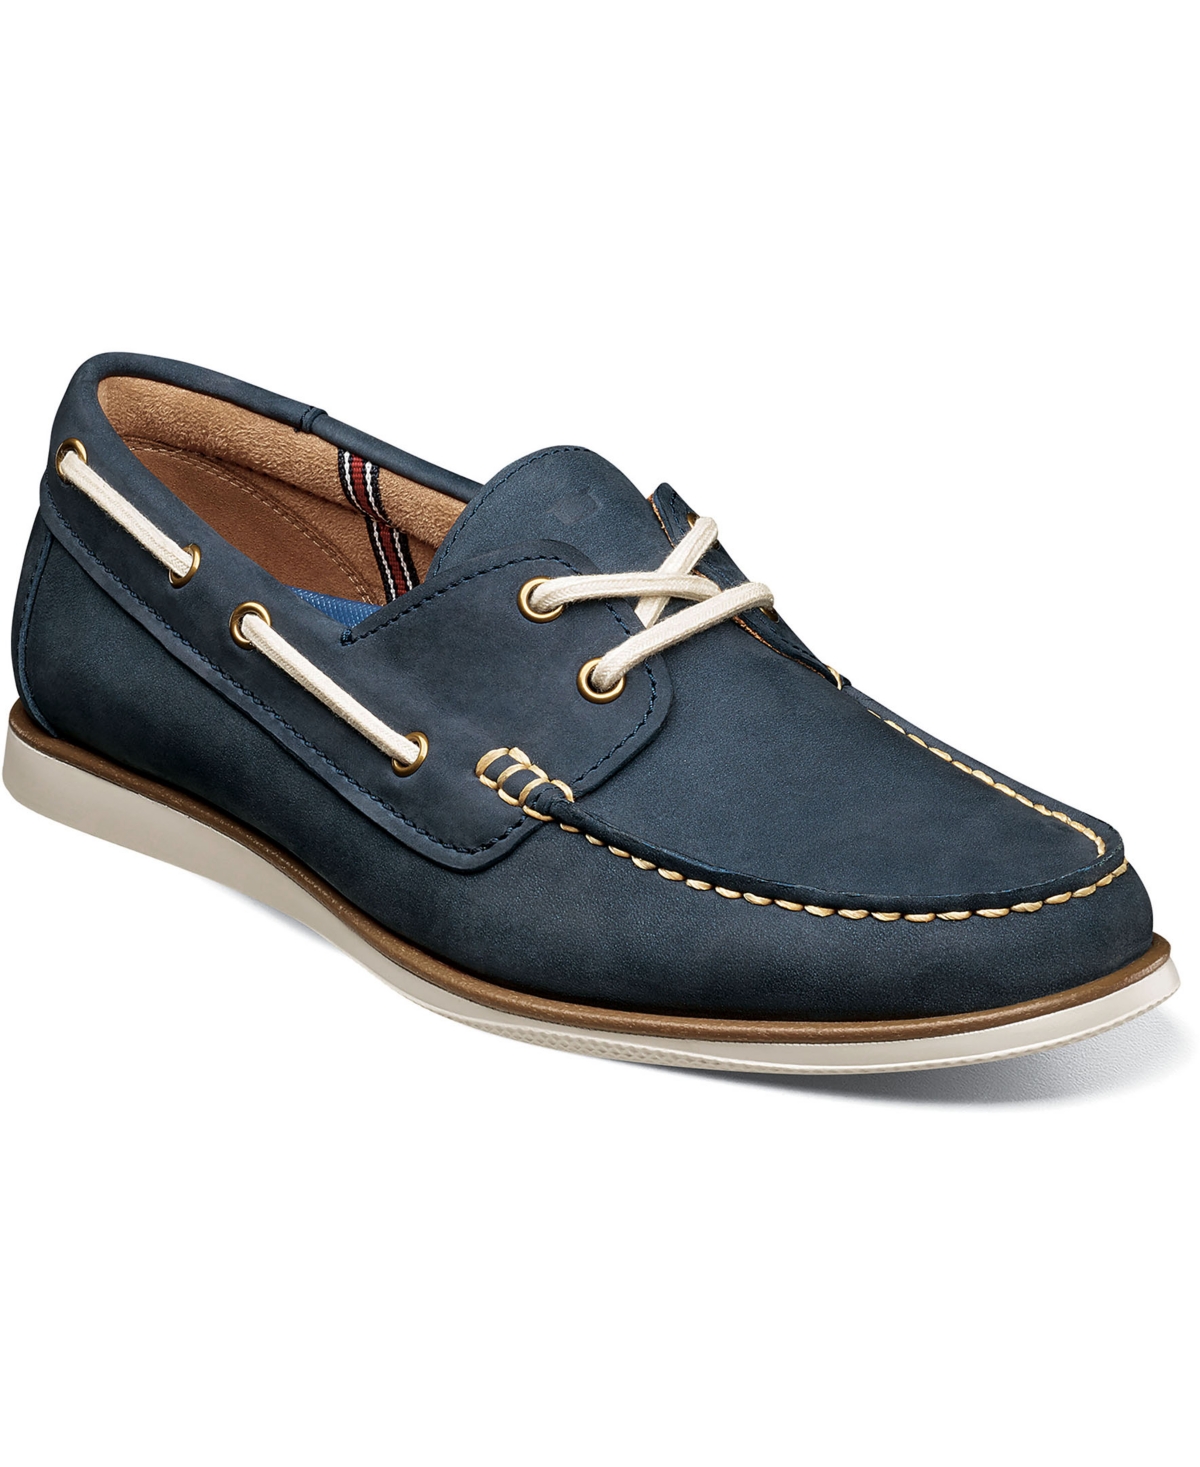 Florsheim Men's Atlantic Moccasin Toe Boat Shoes Men's Shoes